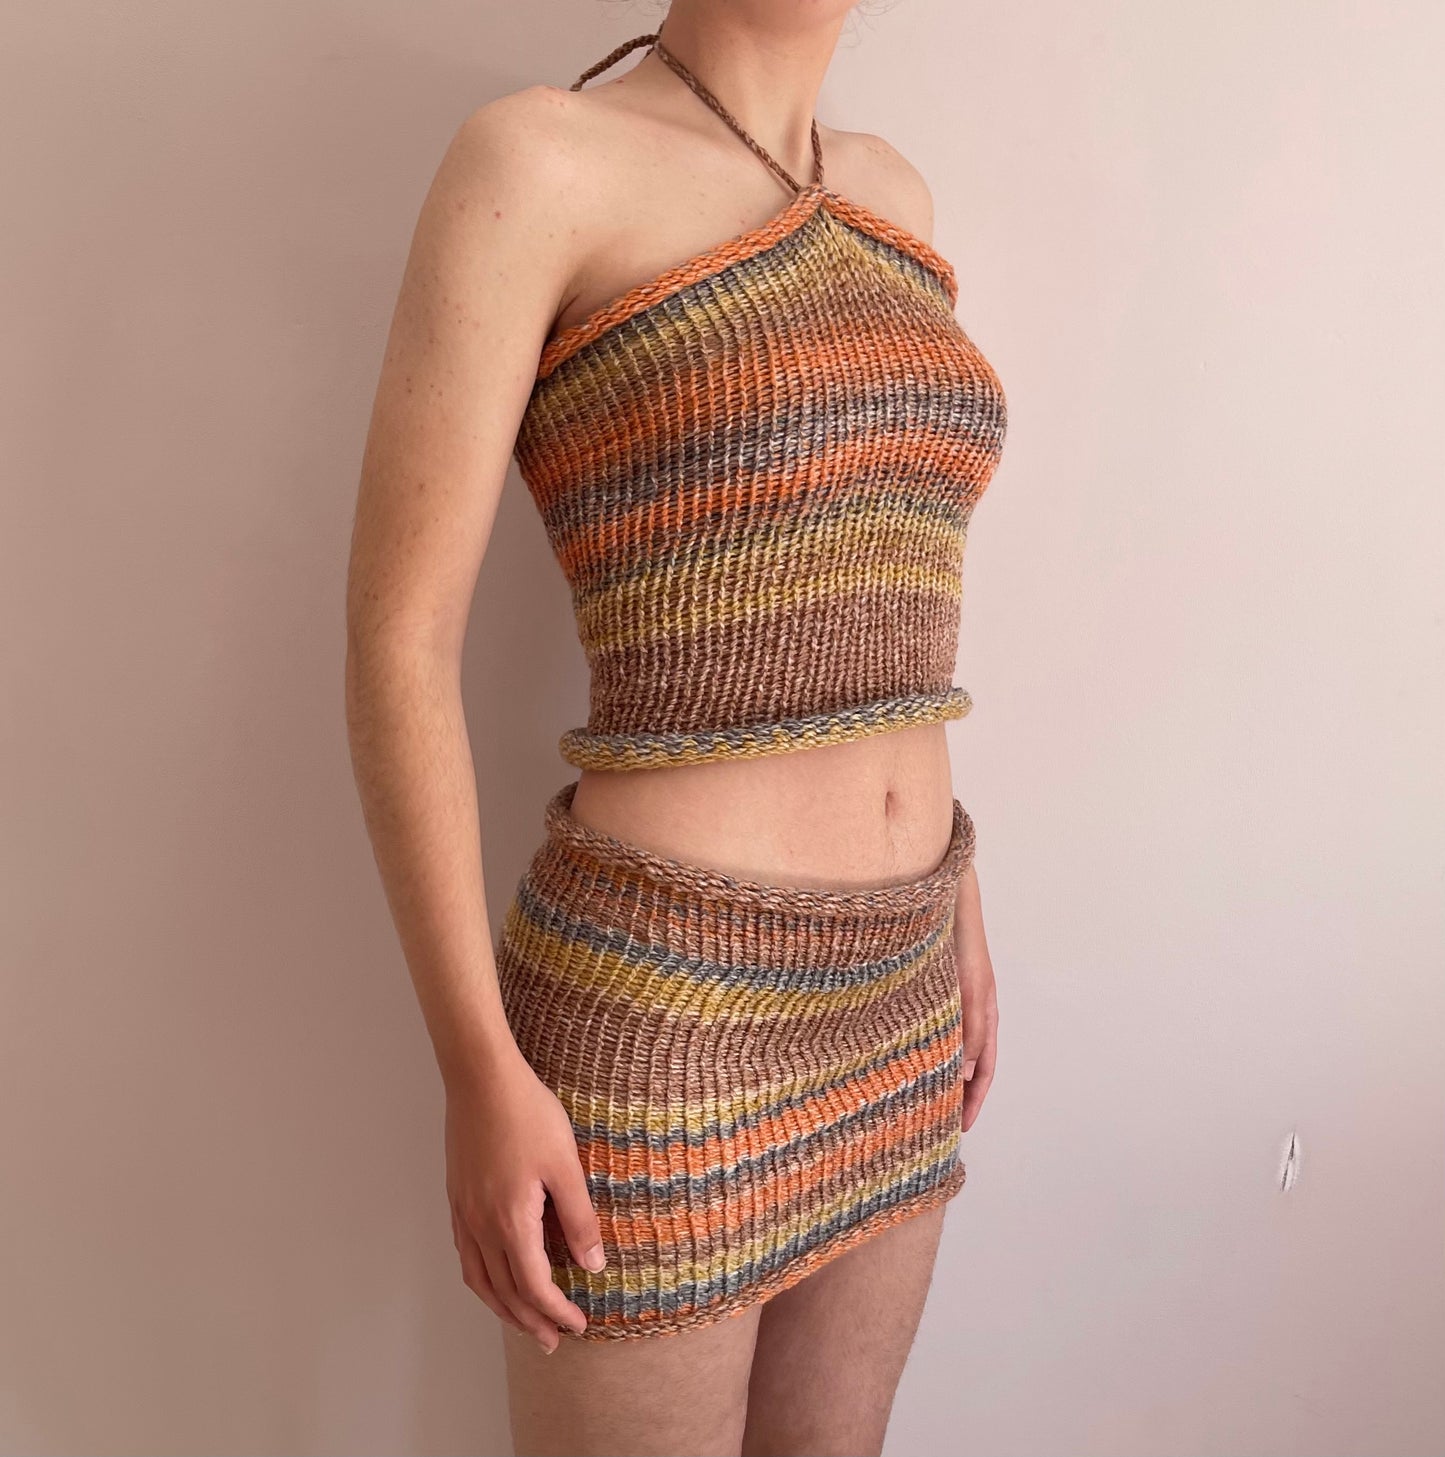 Handmade knitted mini skirt in orange, mustard yellow and grey